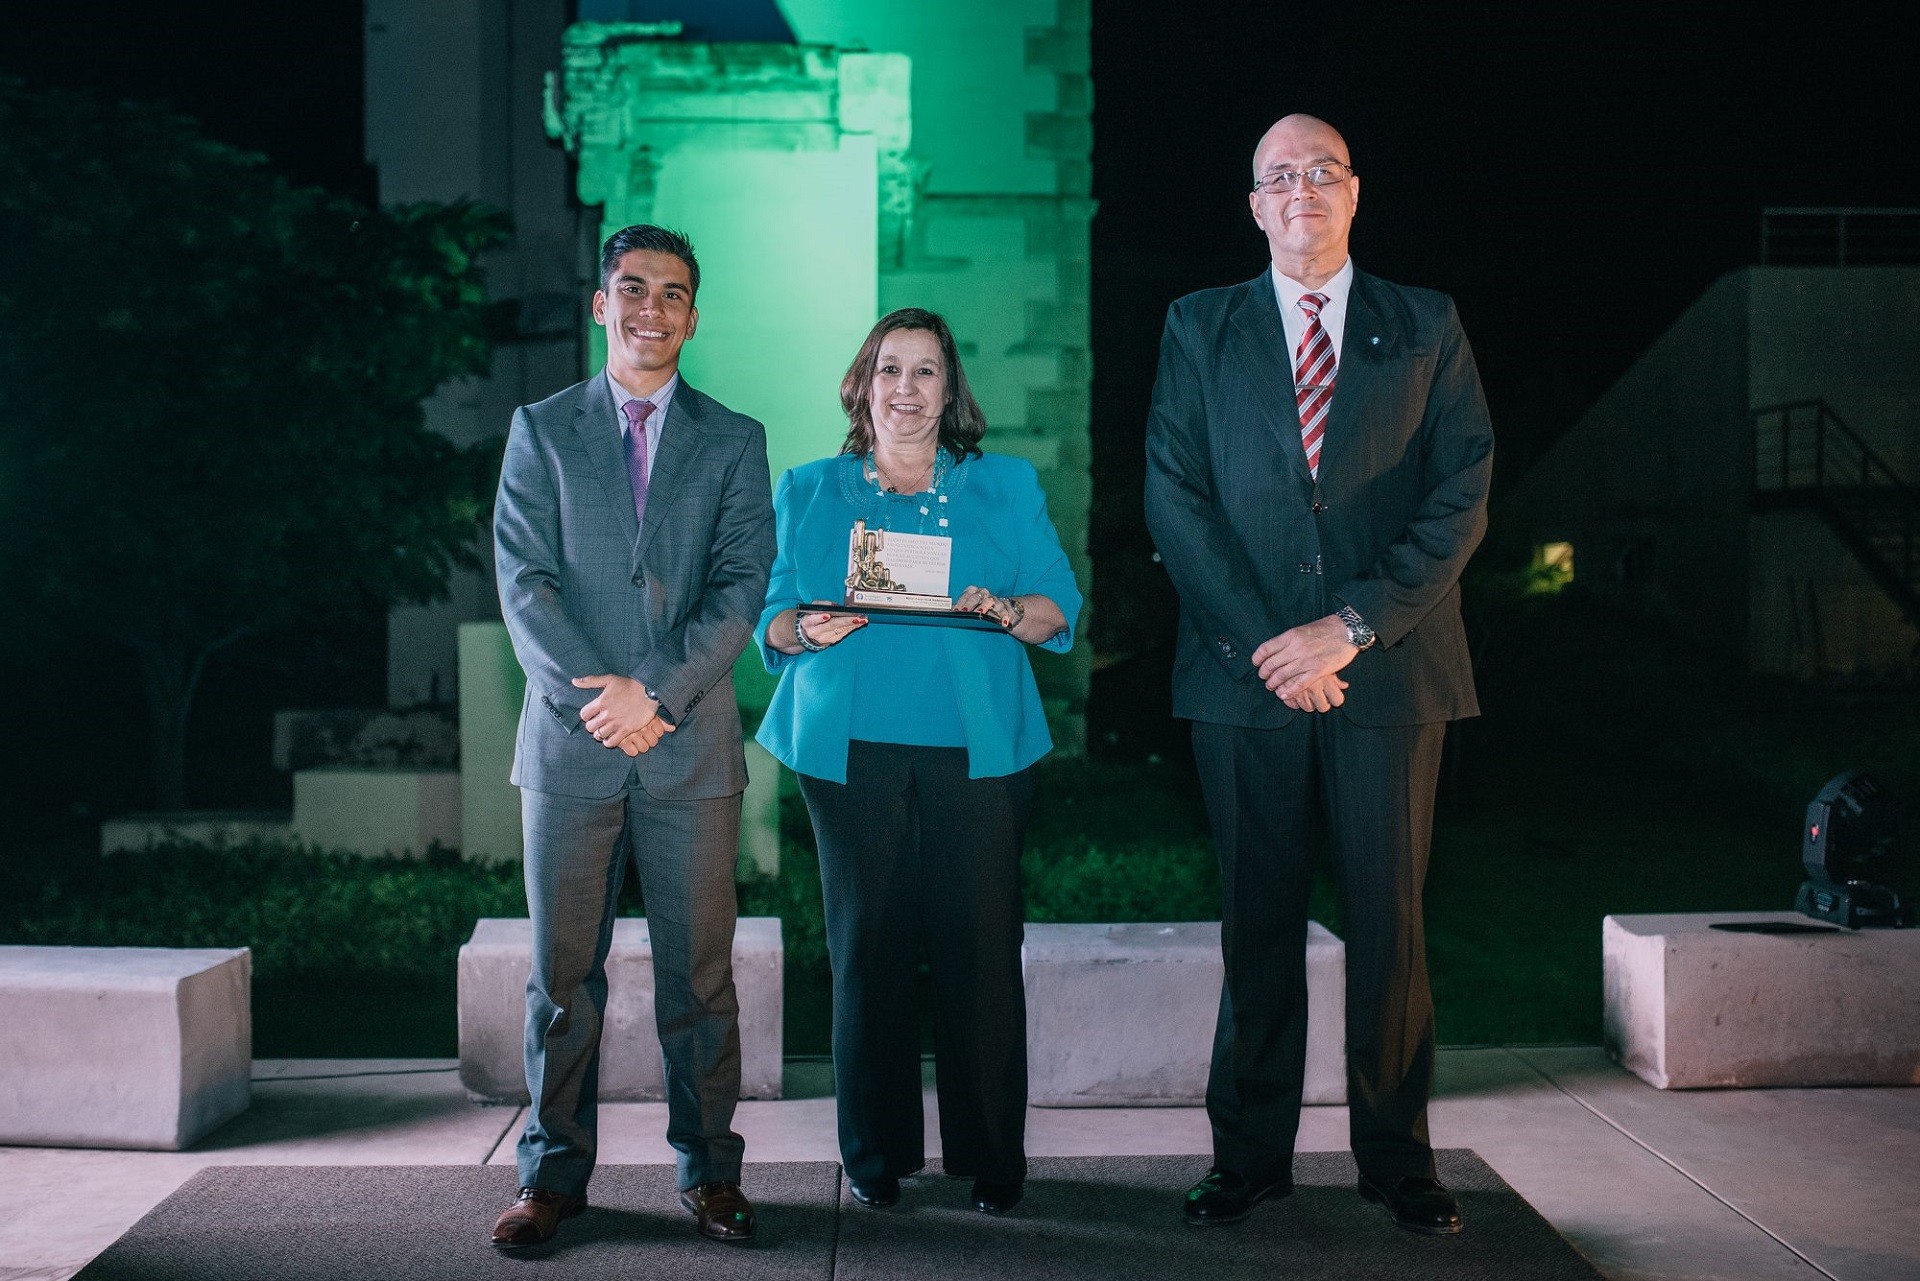 Los profesores recibieron un diploma y una replica del monumento en honor a Adolfo Prieto